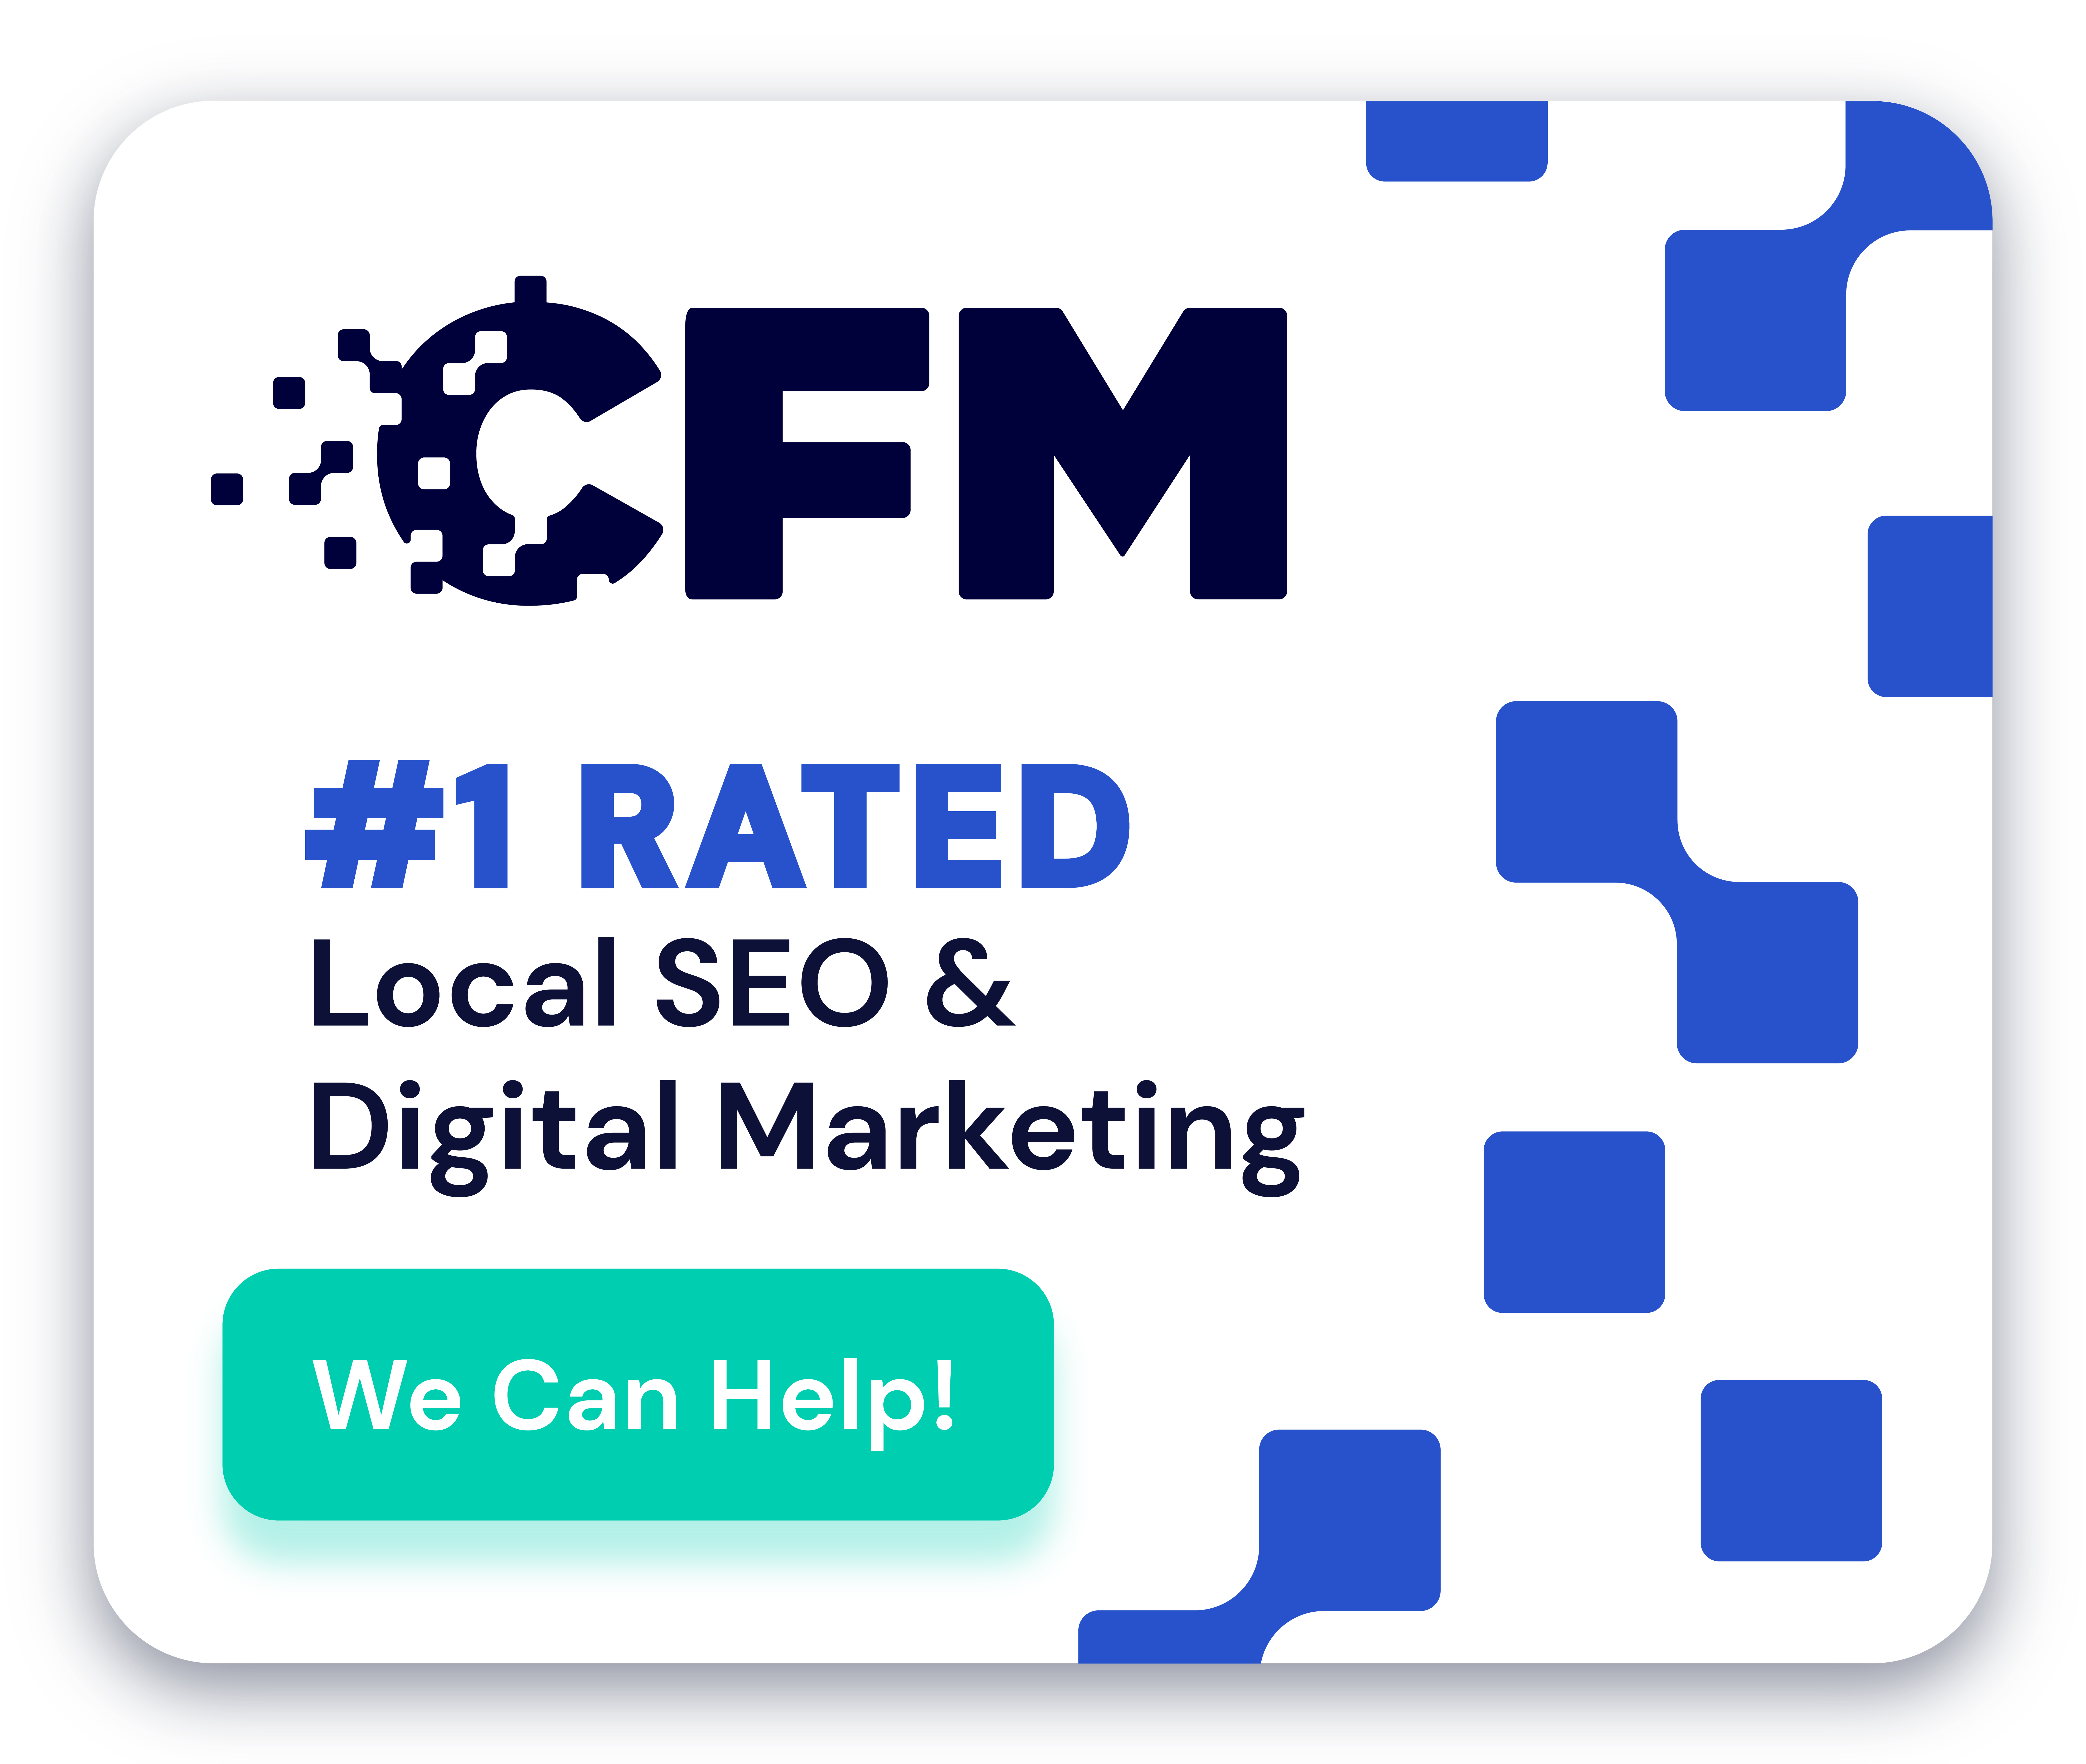 CFM - SEO & Digital Marketing in Franklin & Nashville TN by CFM banner